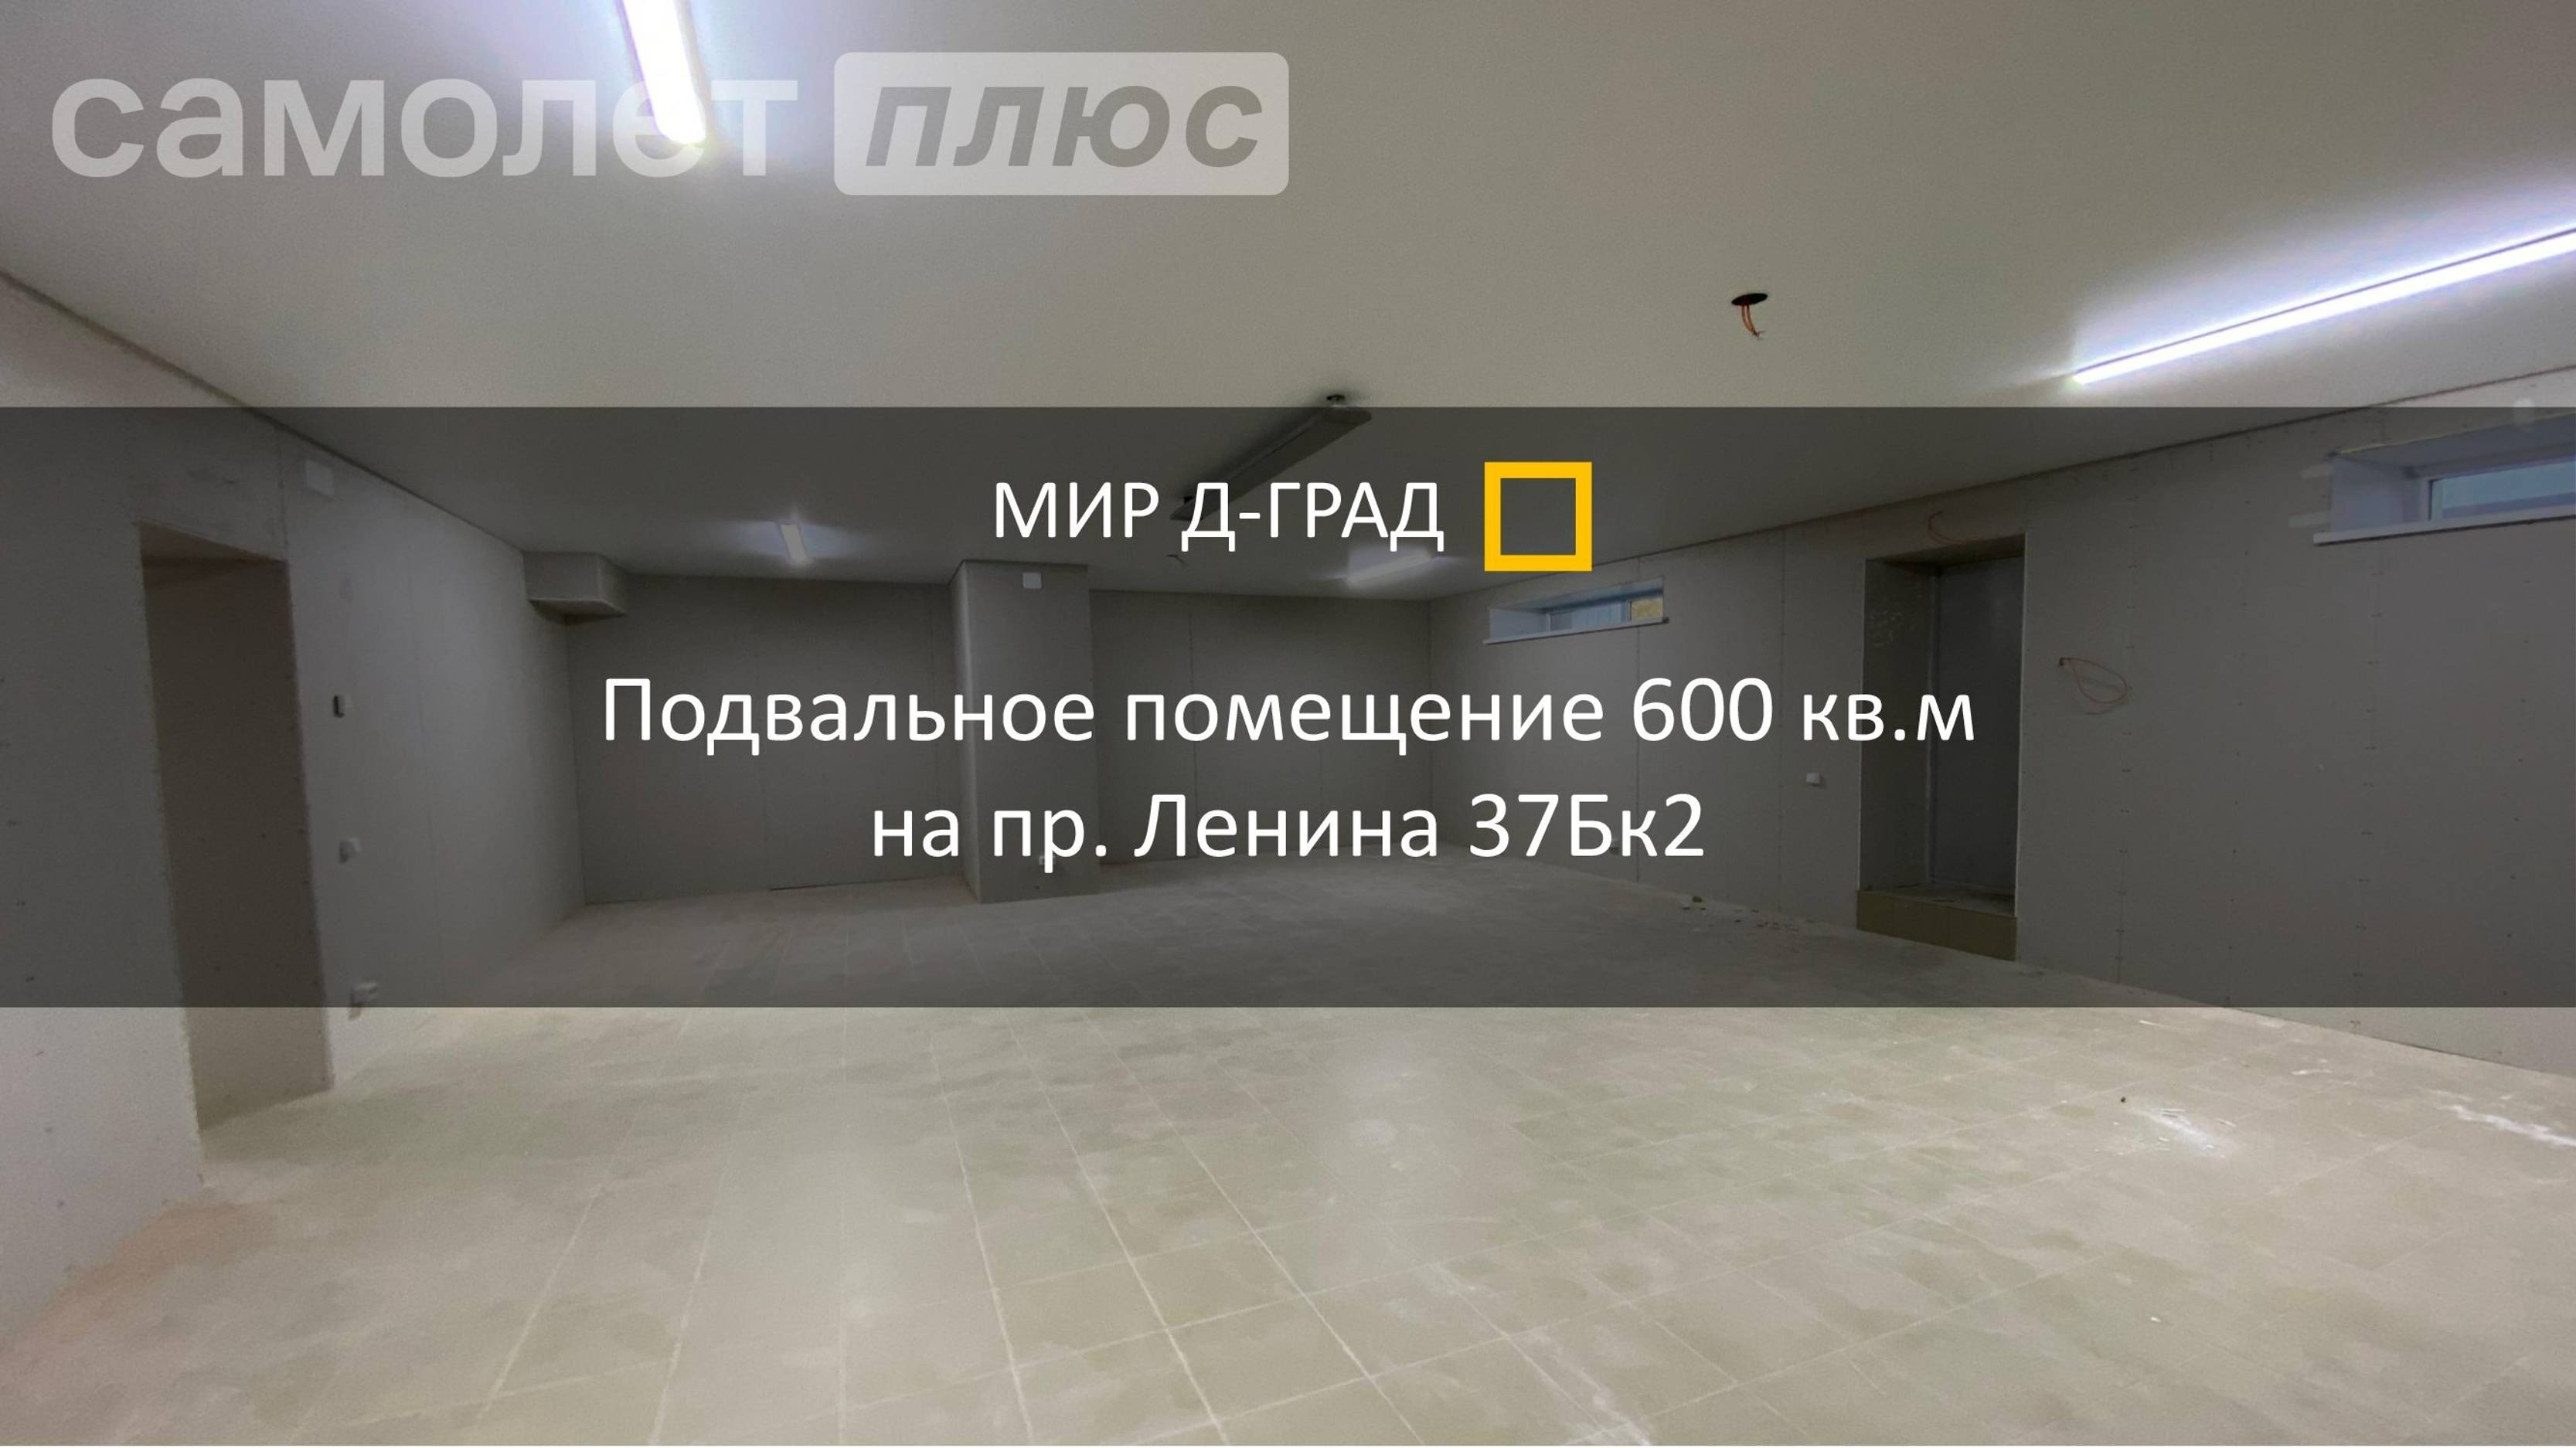 Подвал 600 м² на пр. Ленина, д. 37Бк2, г. Димитровград, Ульяновская область